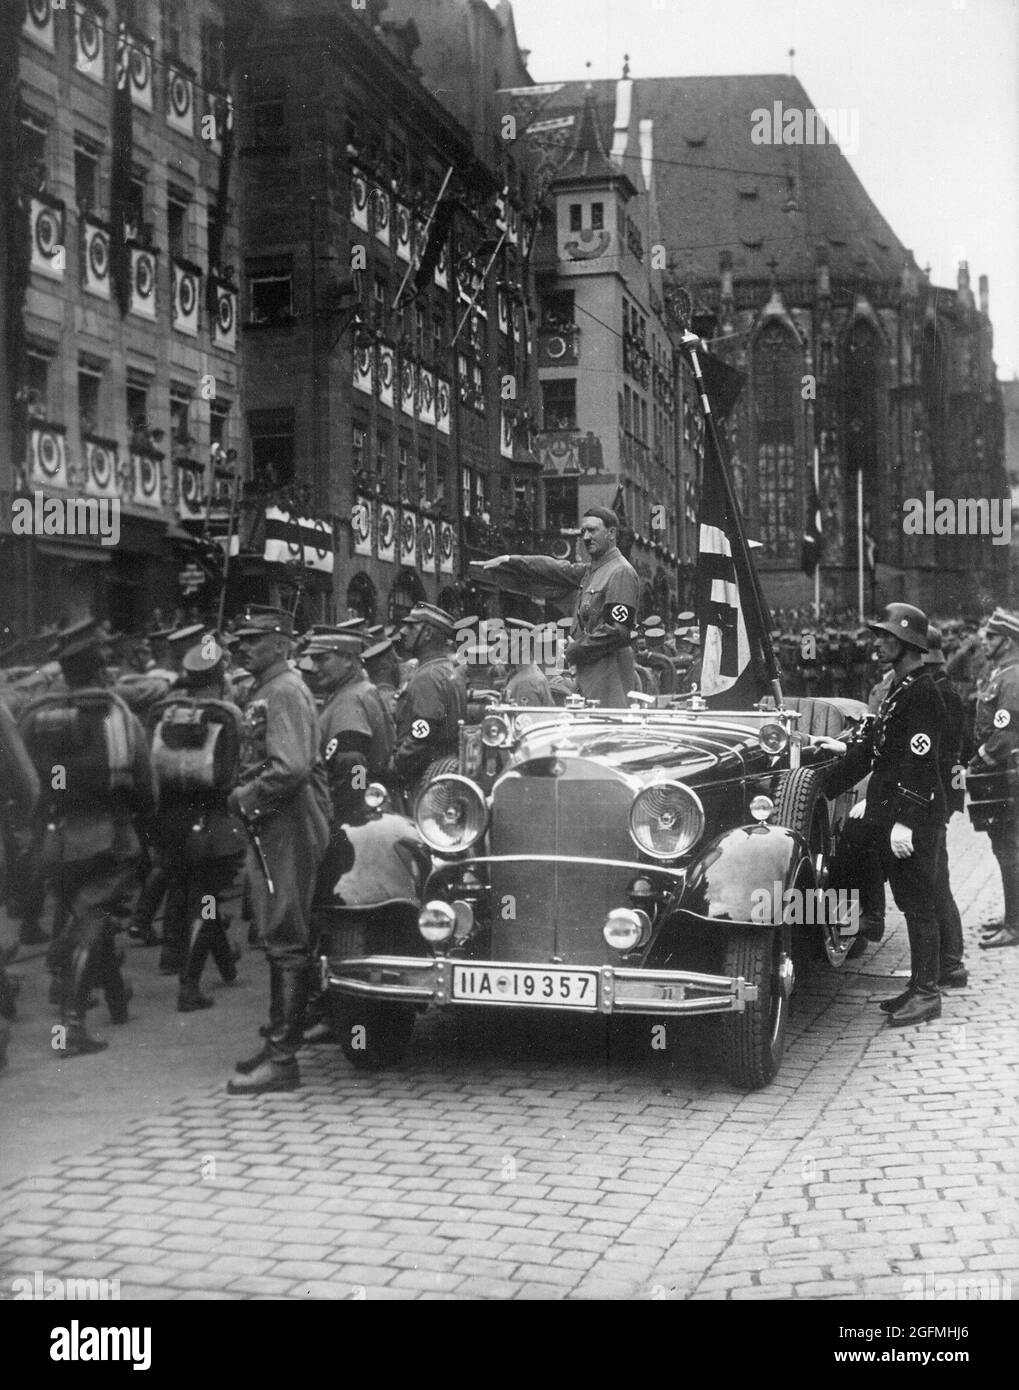 Hitler se tenait dans une voiture qui saluait les nazis alors qu'il regarde les troupes de sa (chemises brunes) défiler à Nuremberg en 1935 Banque D'Images